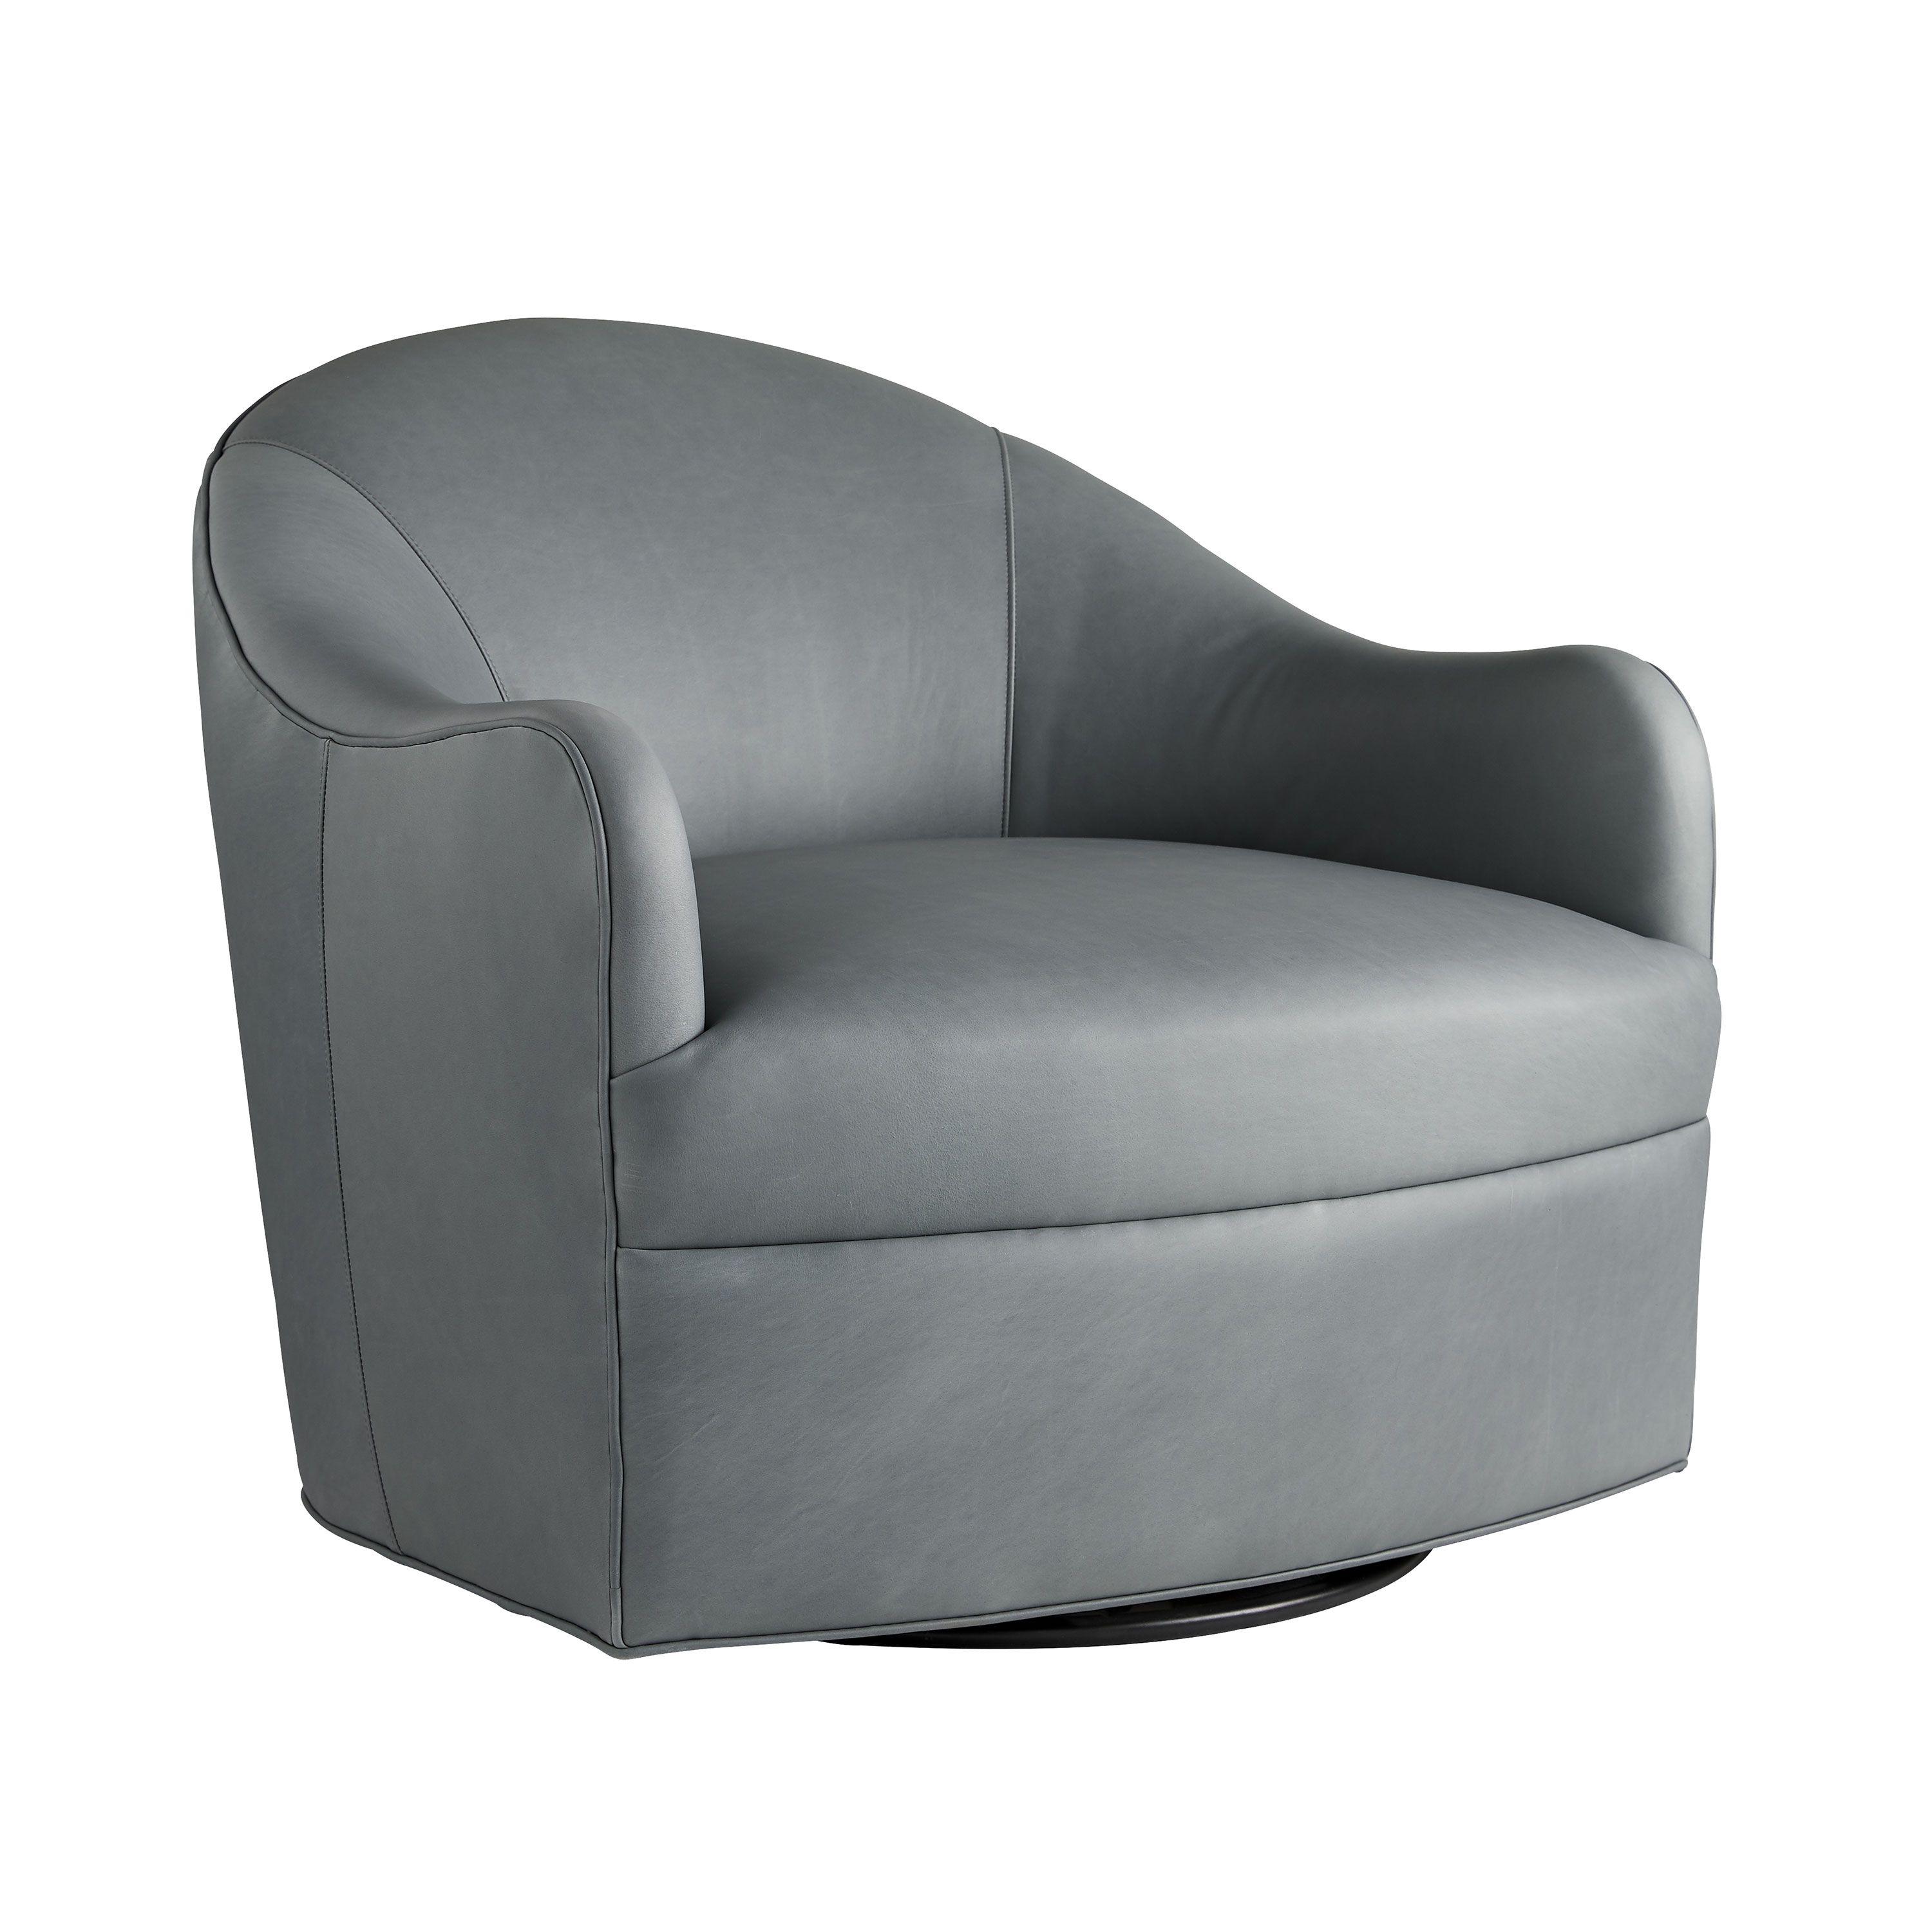 Купить Кресло Delfino Chair Anchor Grey Leather Swivel в интернет-магазине roooms.ru